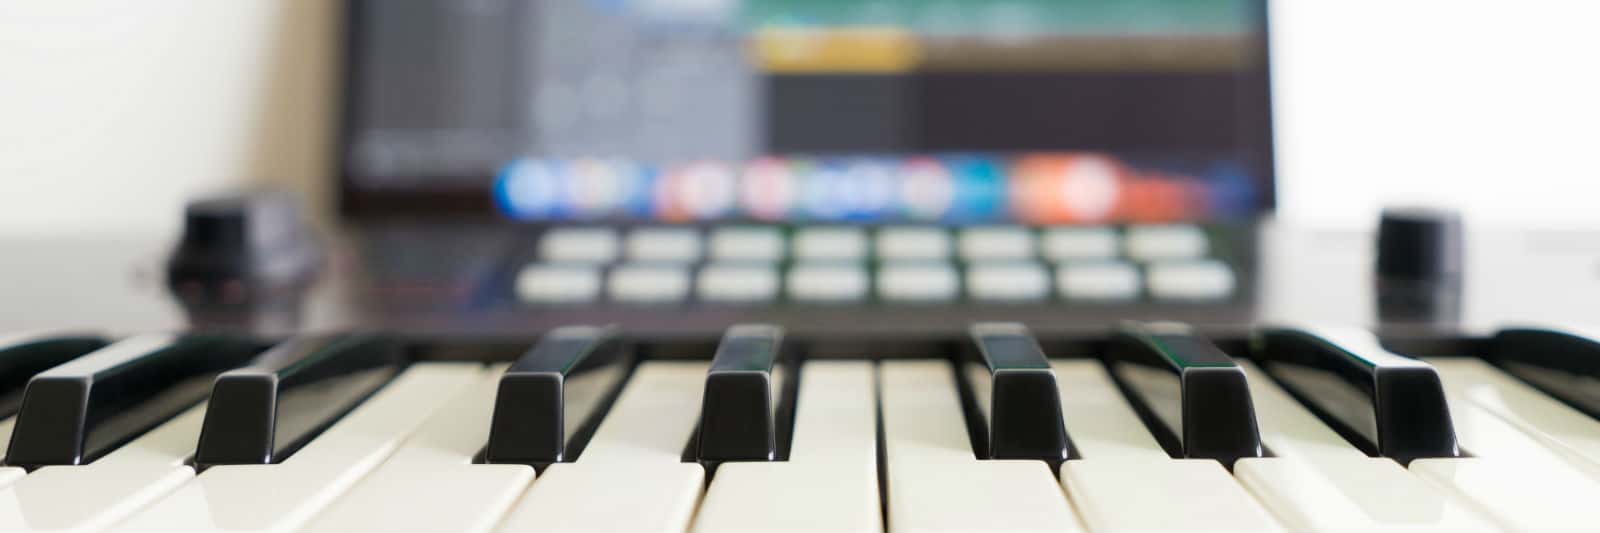 How Many Keys Are on a Piano?